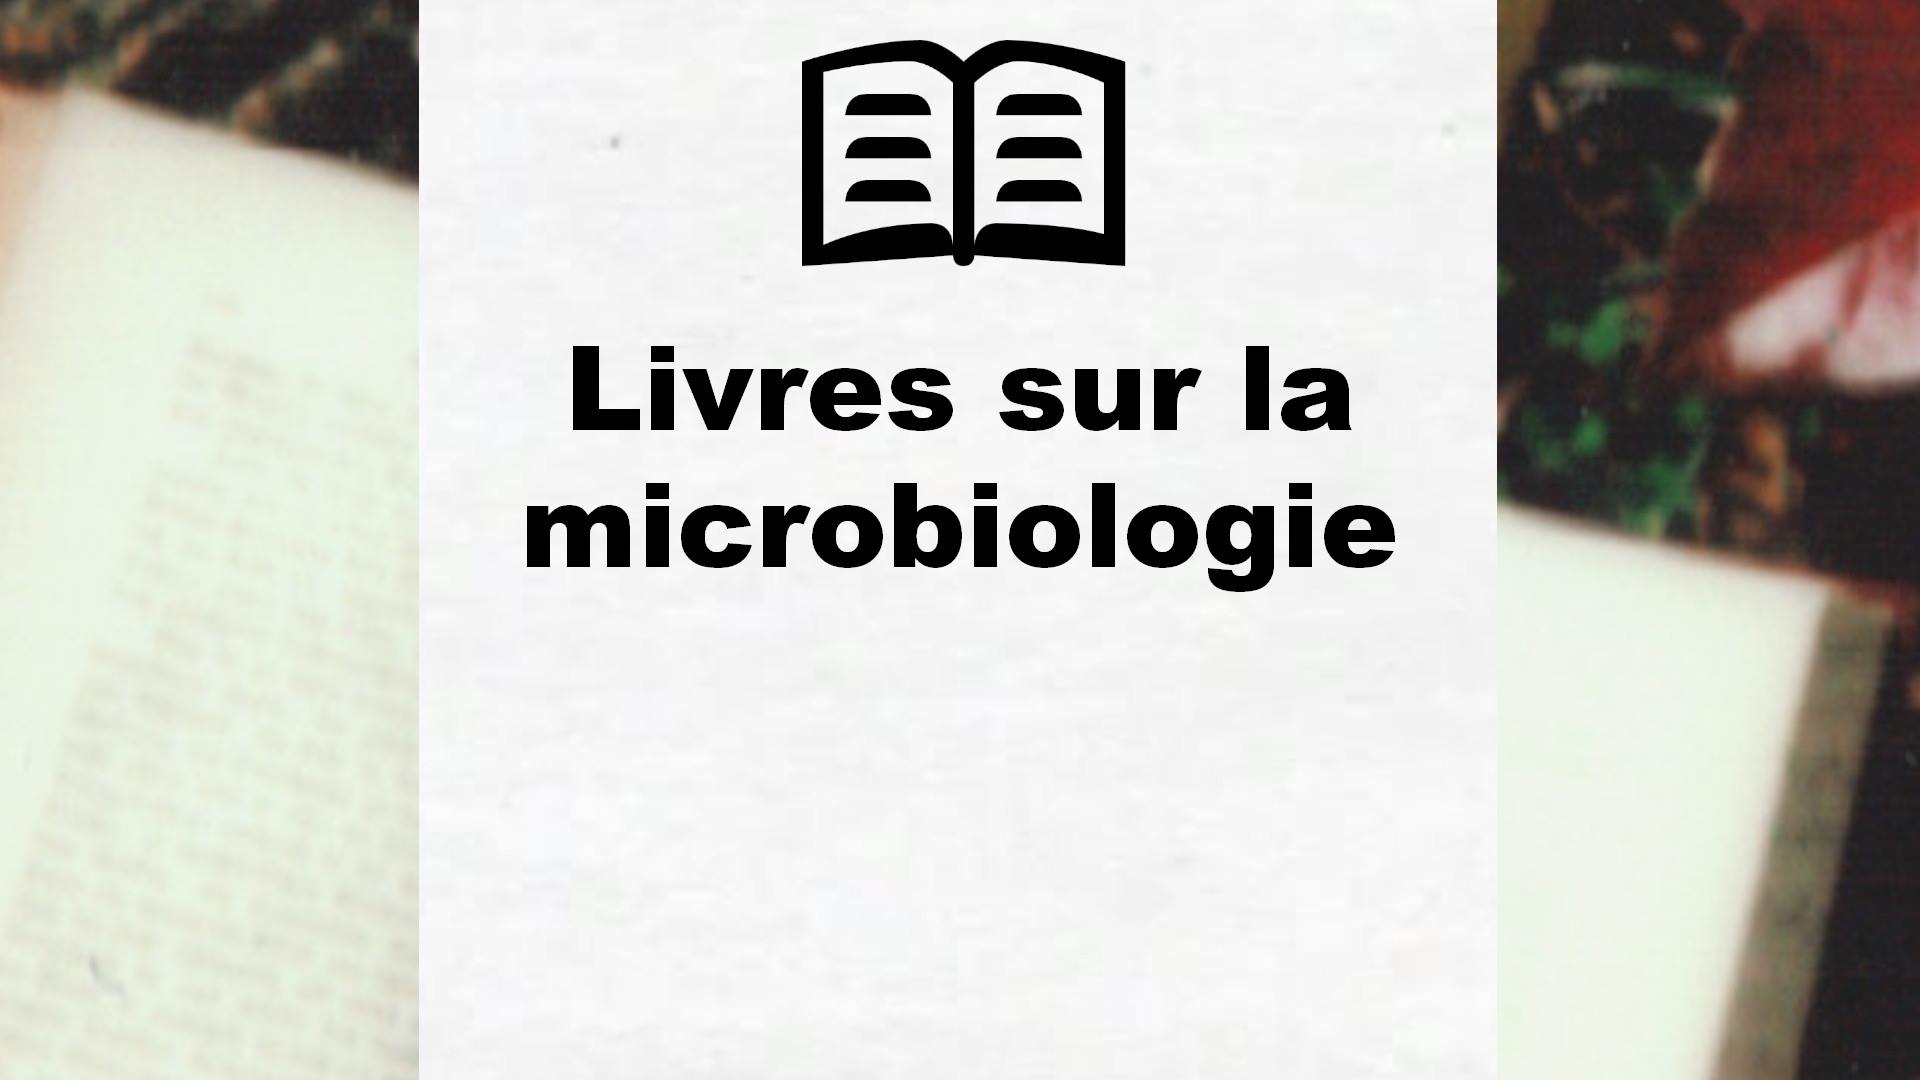 Livres sur la microbiologie